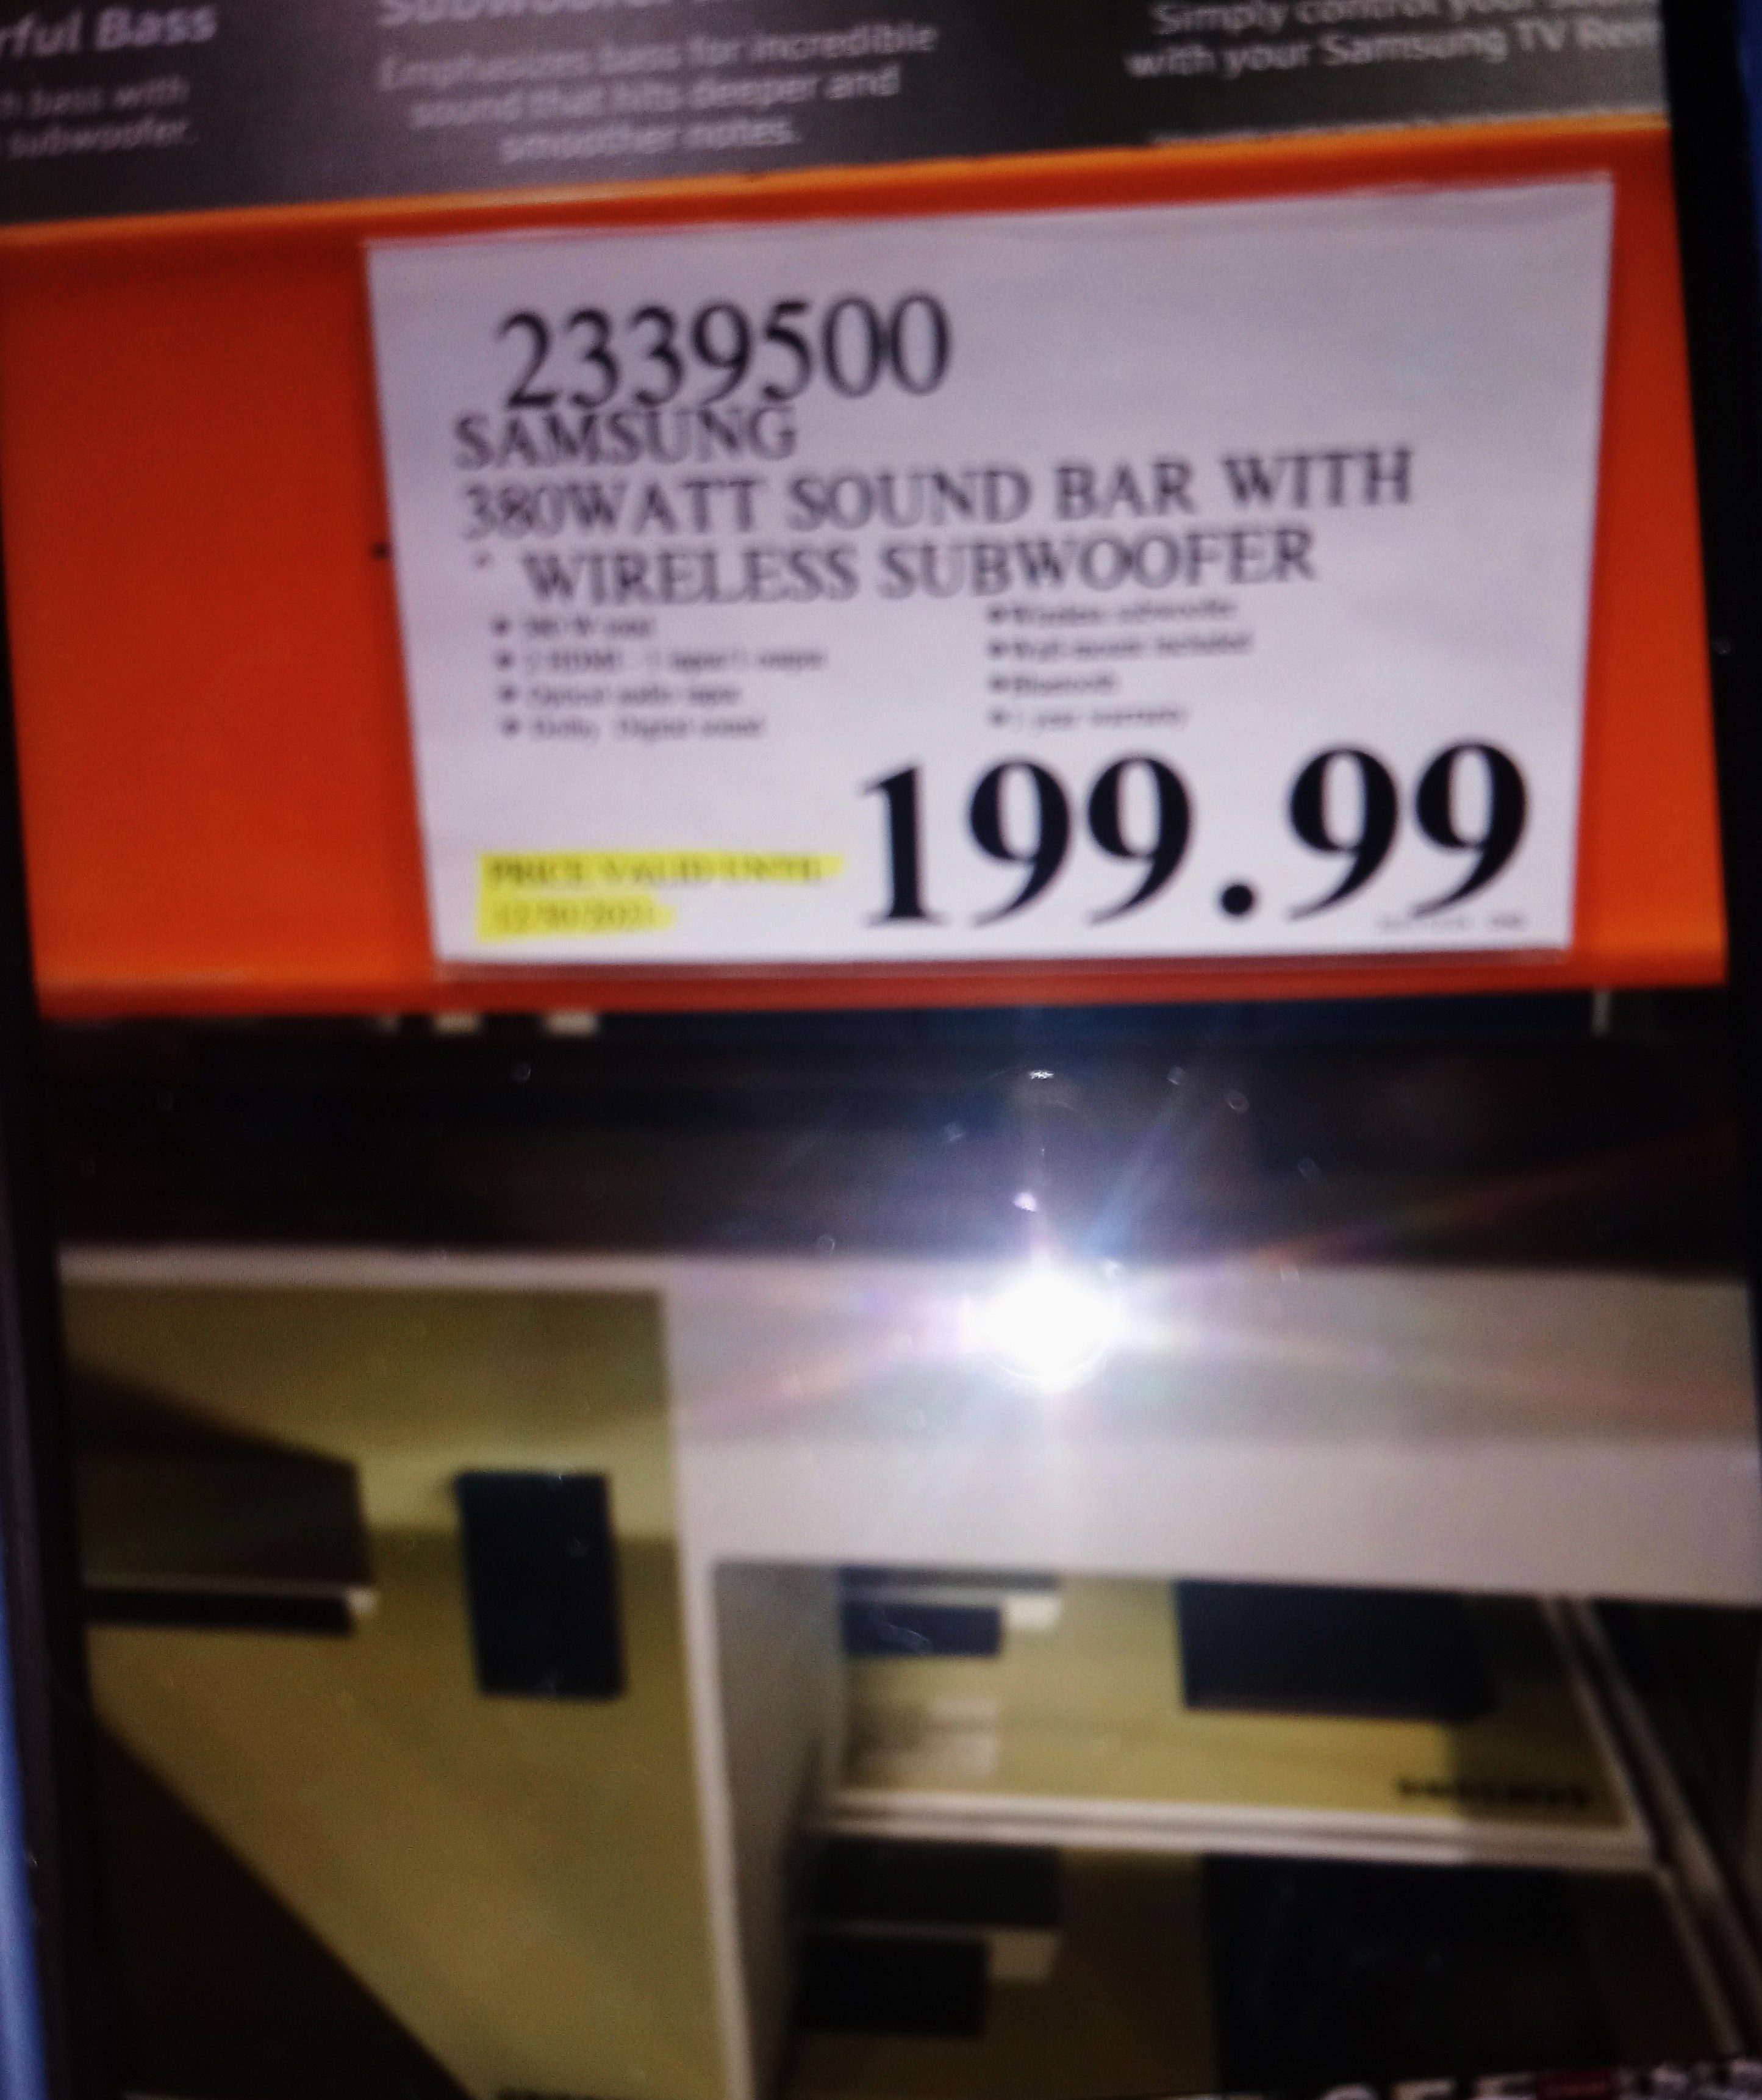 Beneden afronden Verdeel Nieuwheid Costco] [Boxing Day] Samsung 380 watts sound bar with wireless Subwoofer  $199 - RedFlagDeals.com Forums